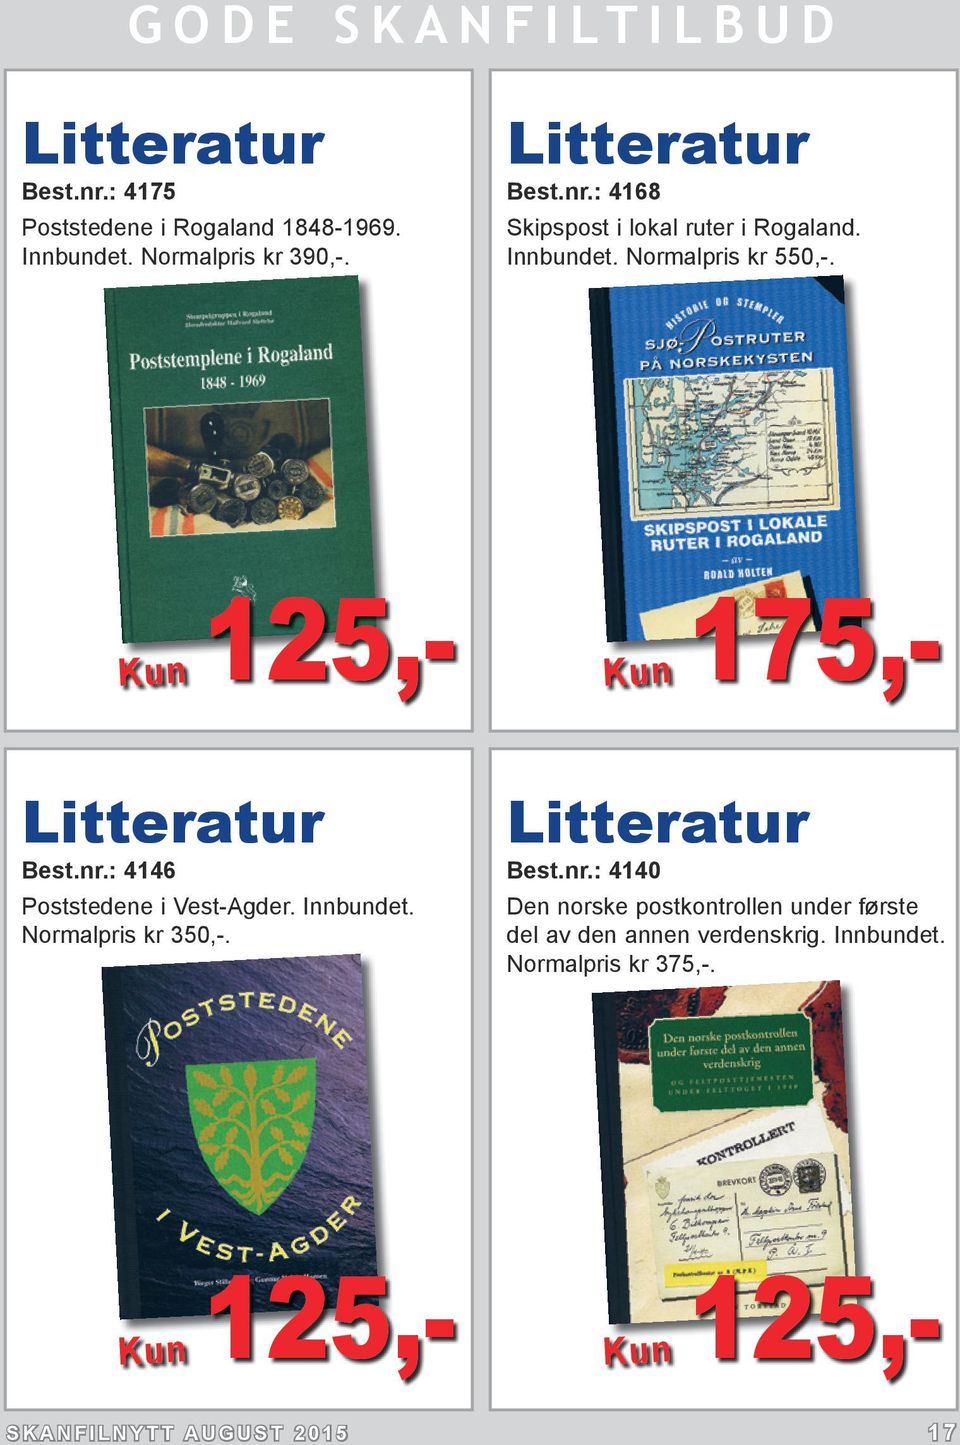 Normalpris kr 350,-. Litteratur Best.nr.: 4140 Den norske postkontrollen under første del av den annen verdenskrig.